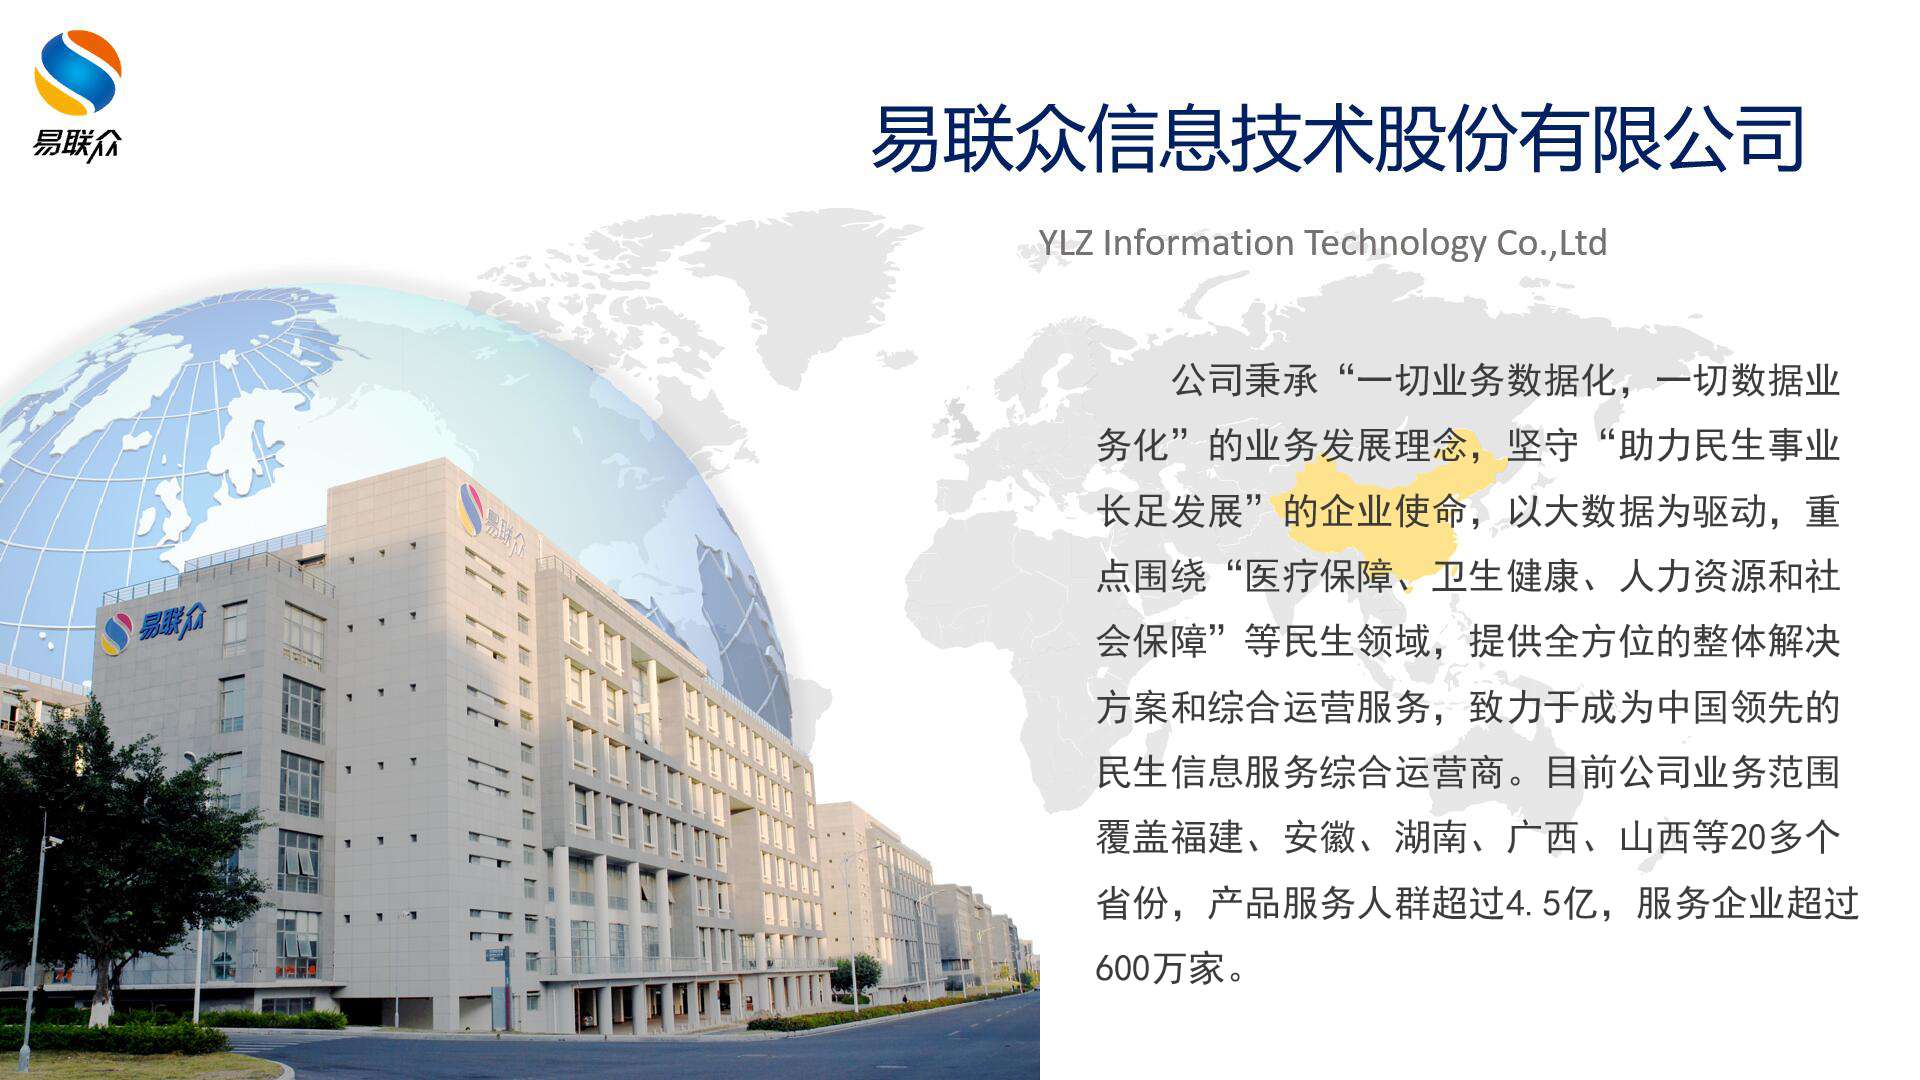 YLZ Information Technology Co., Ltd.